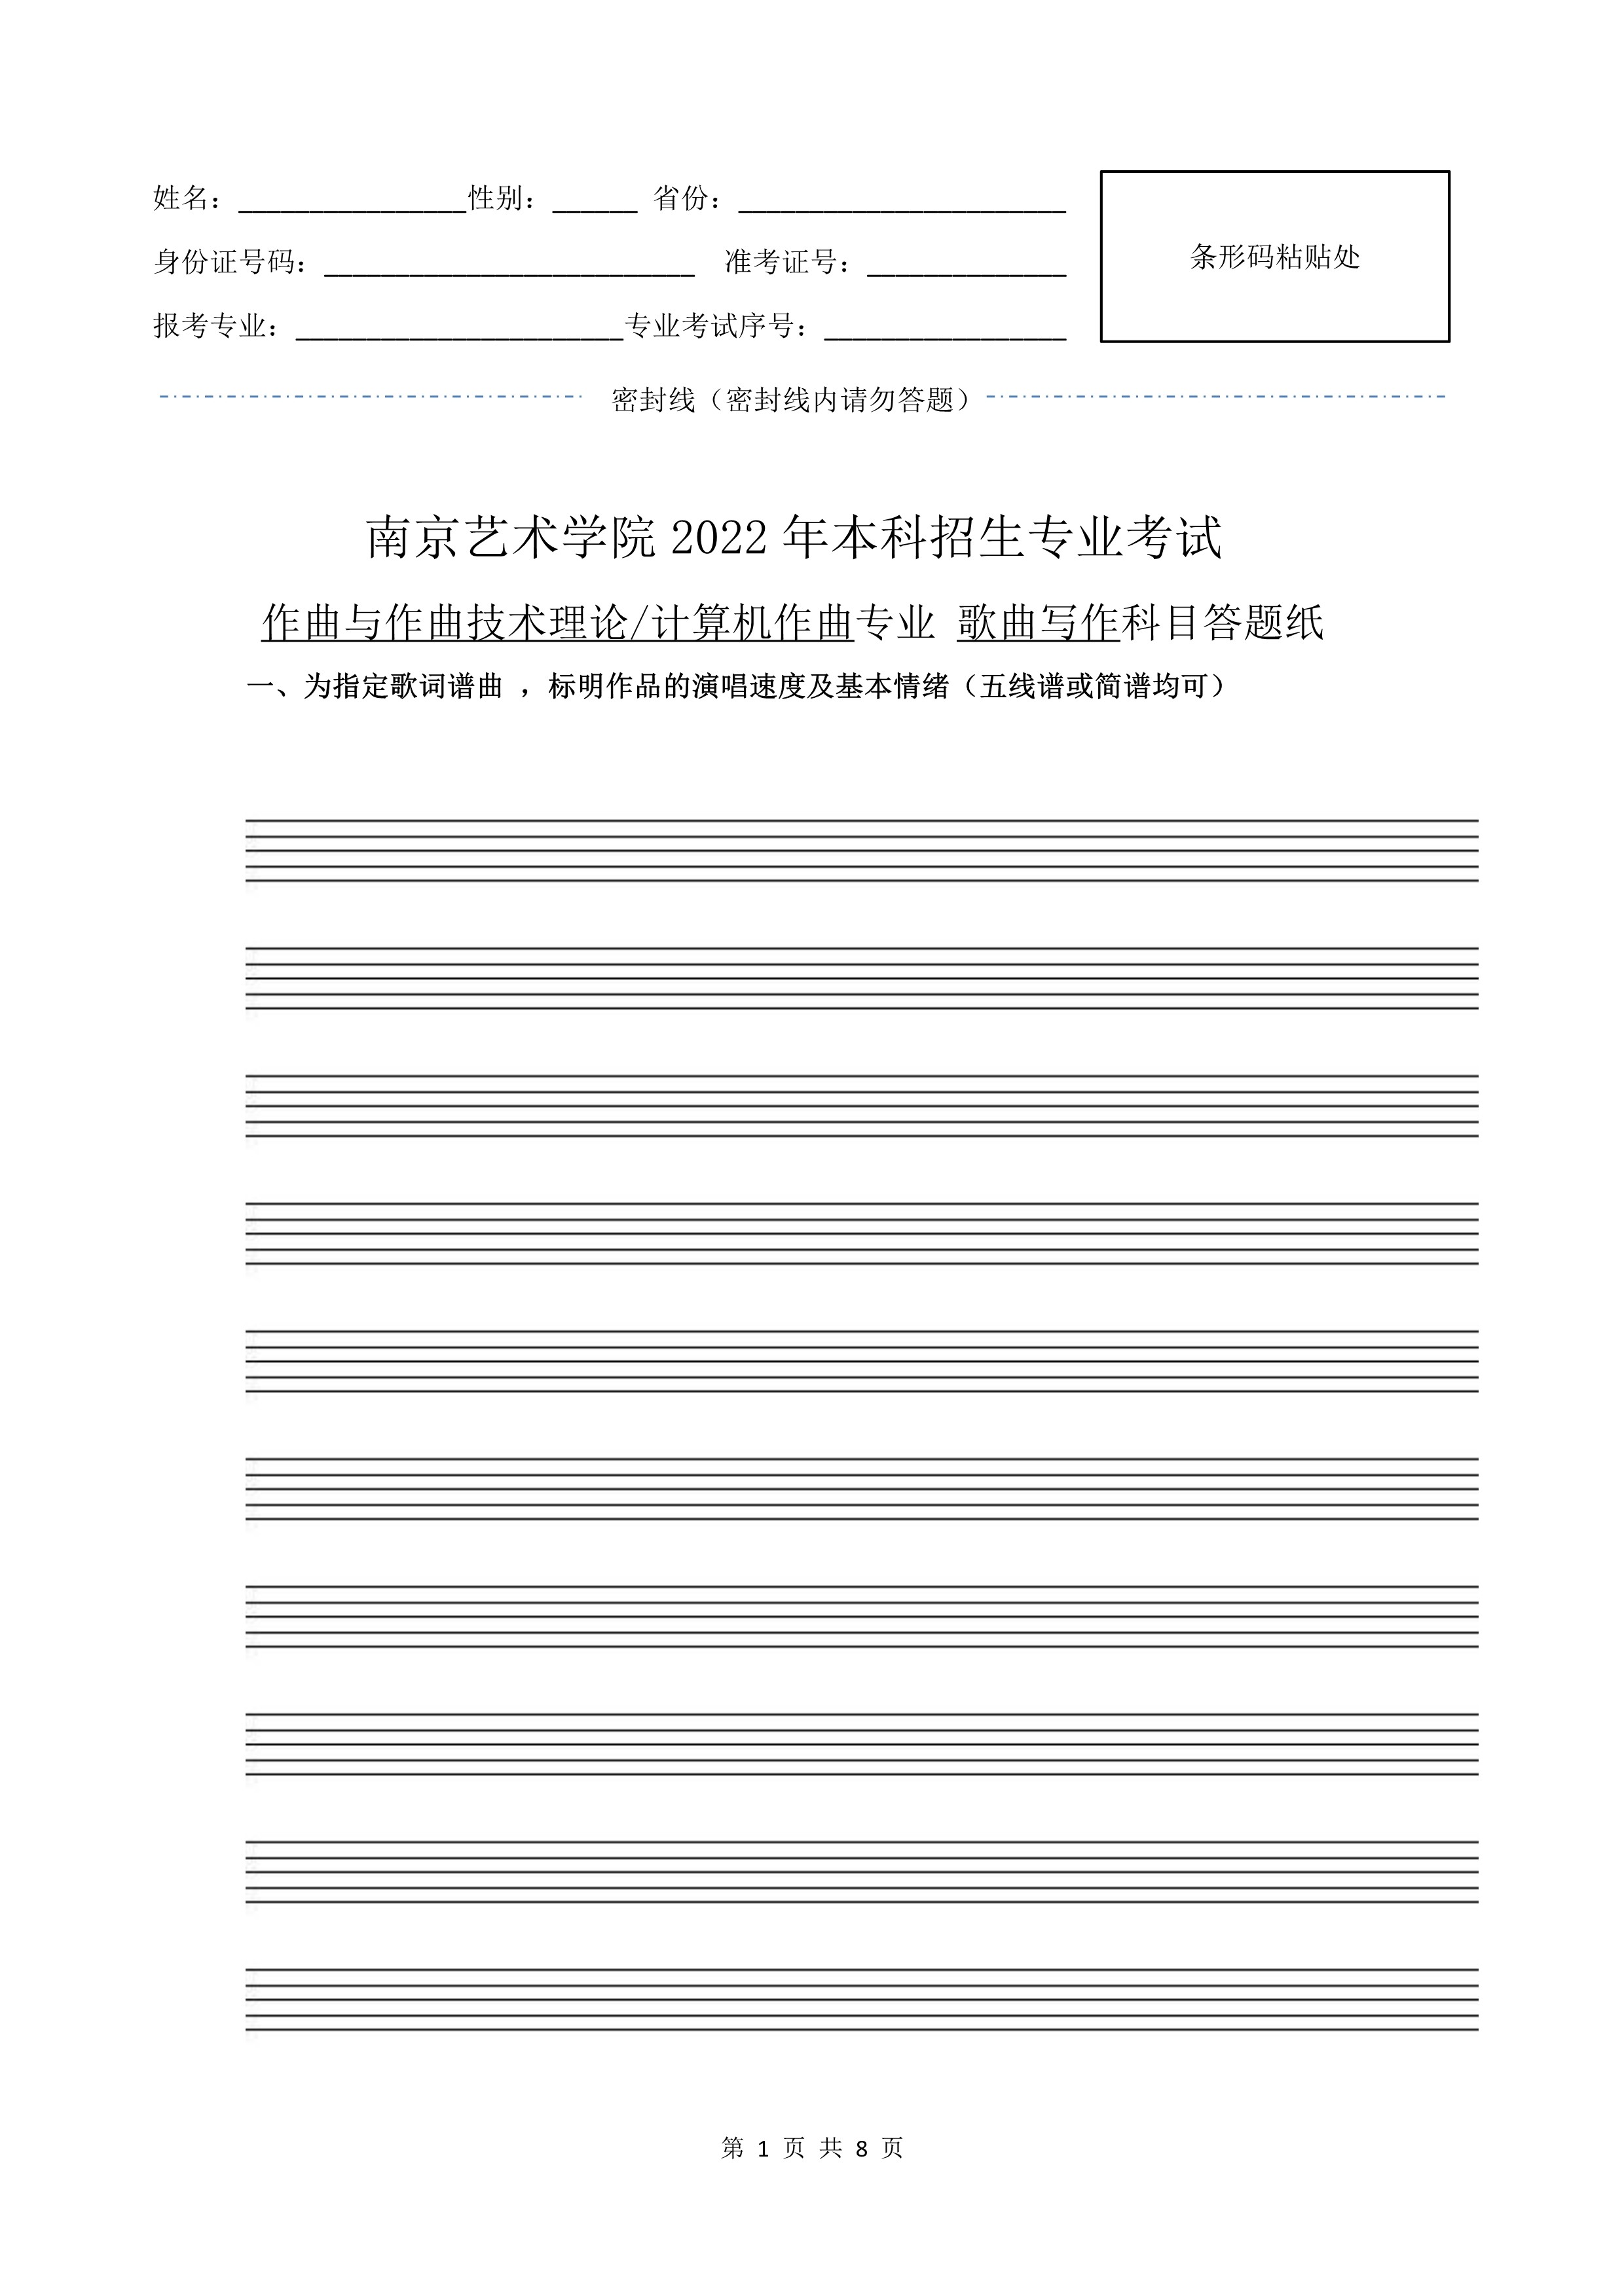 南京艺术学院2022年本科招生作曲与作曲技术理论、作曲与作曲技术理论（计算机作曲）专业《歌曲写作》科目考试答题纸及草稿纸_1.jpg